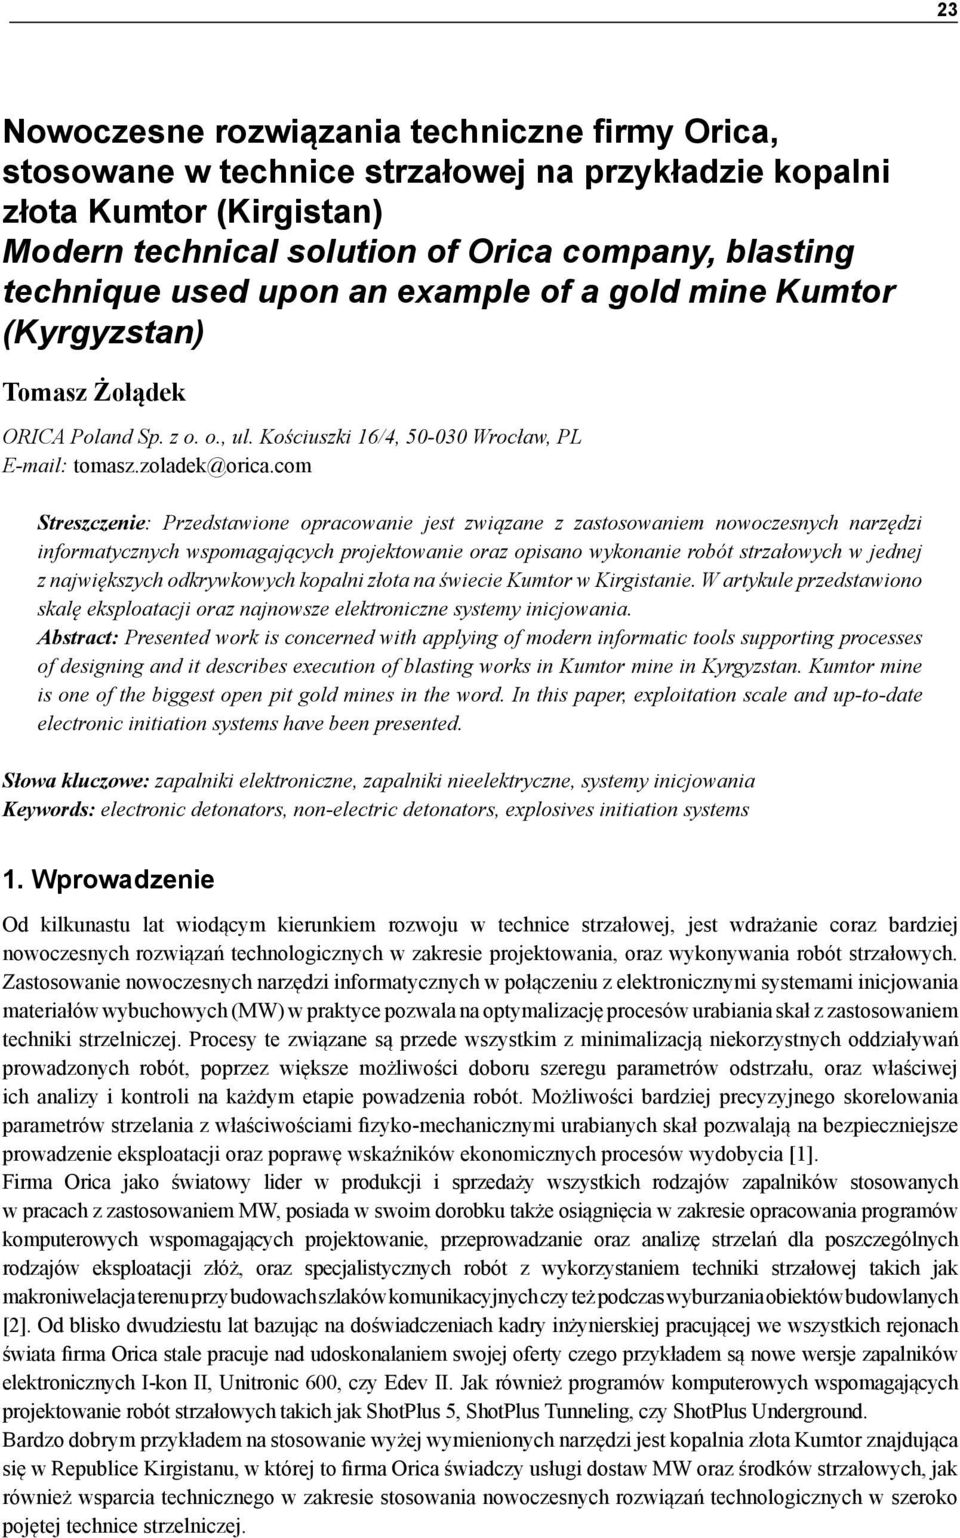 used upon an example of a gold mine Kumtor (Kyrgyzstan) Tomasz Żołądek ORICA Poland Sp. z o. o., ul. Kościuszki 16/4, 50-030 Wrocław, PL E-mail: tomasz.zoladek@orica.